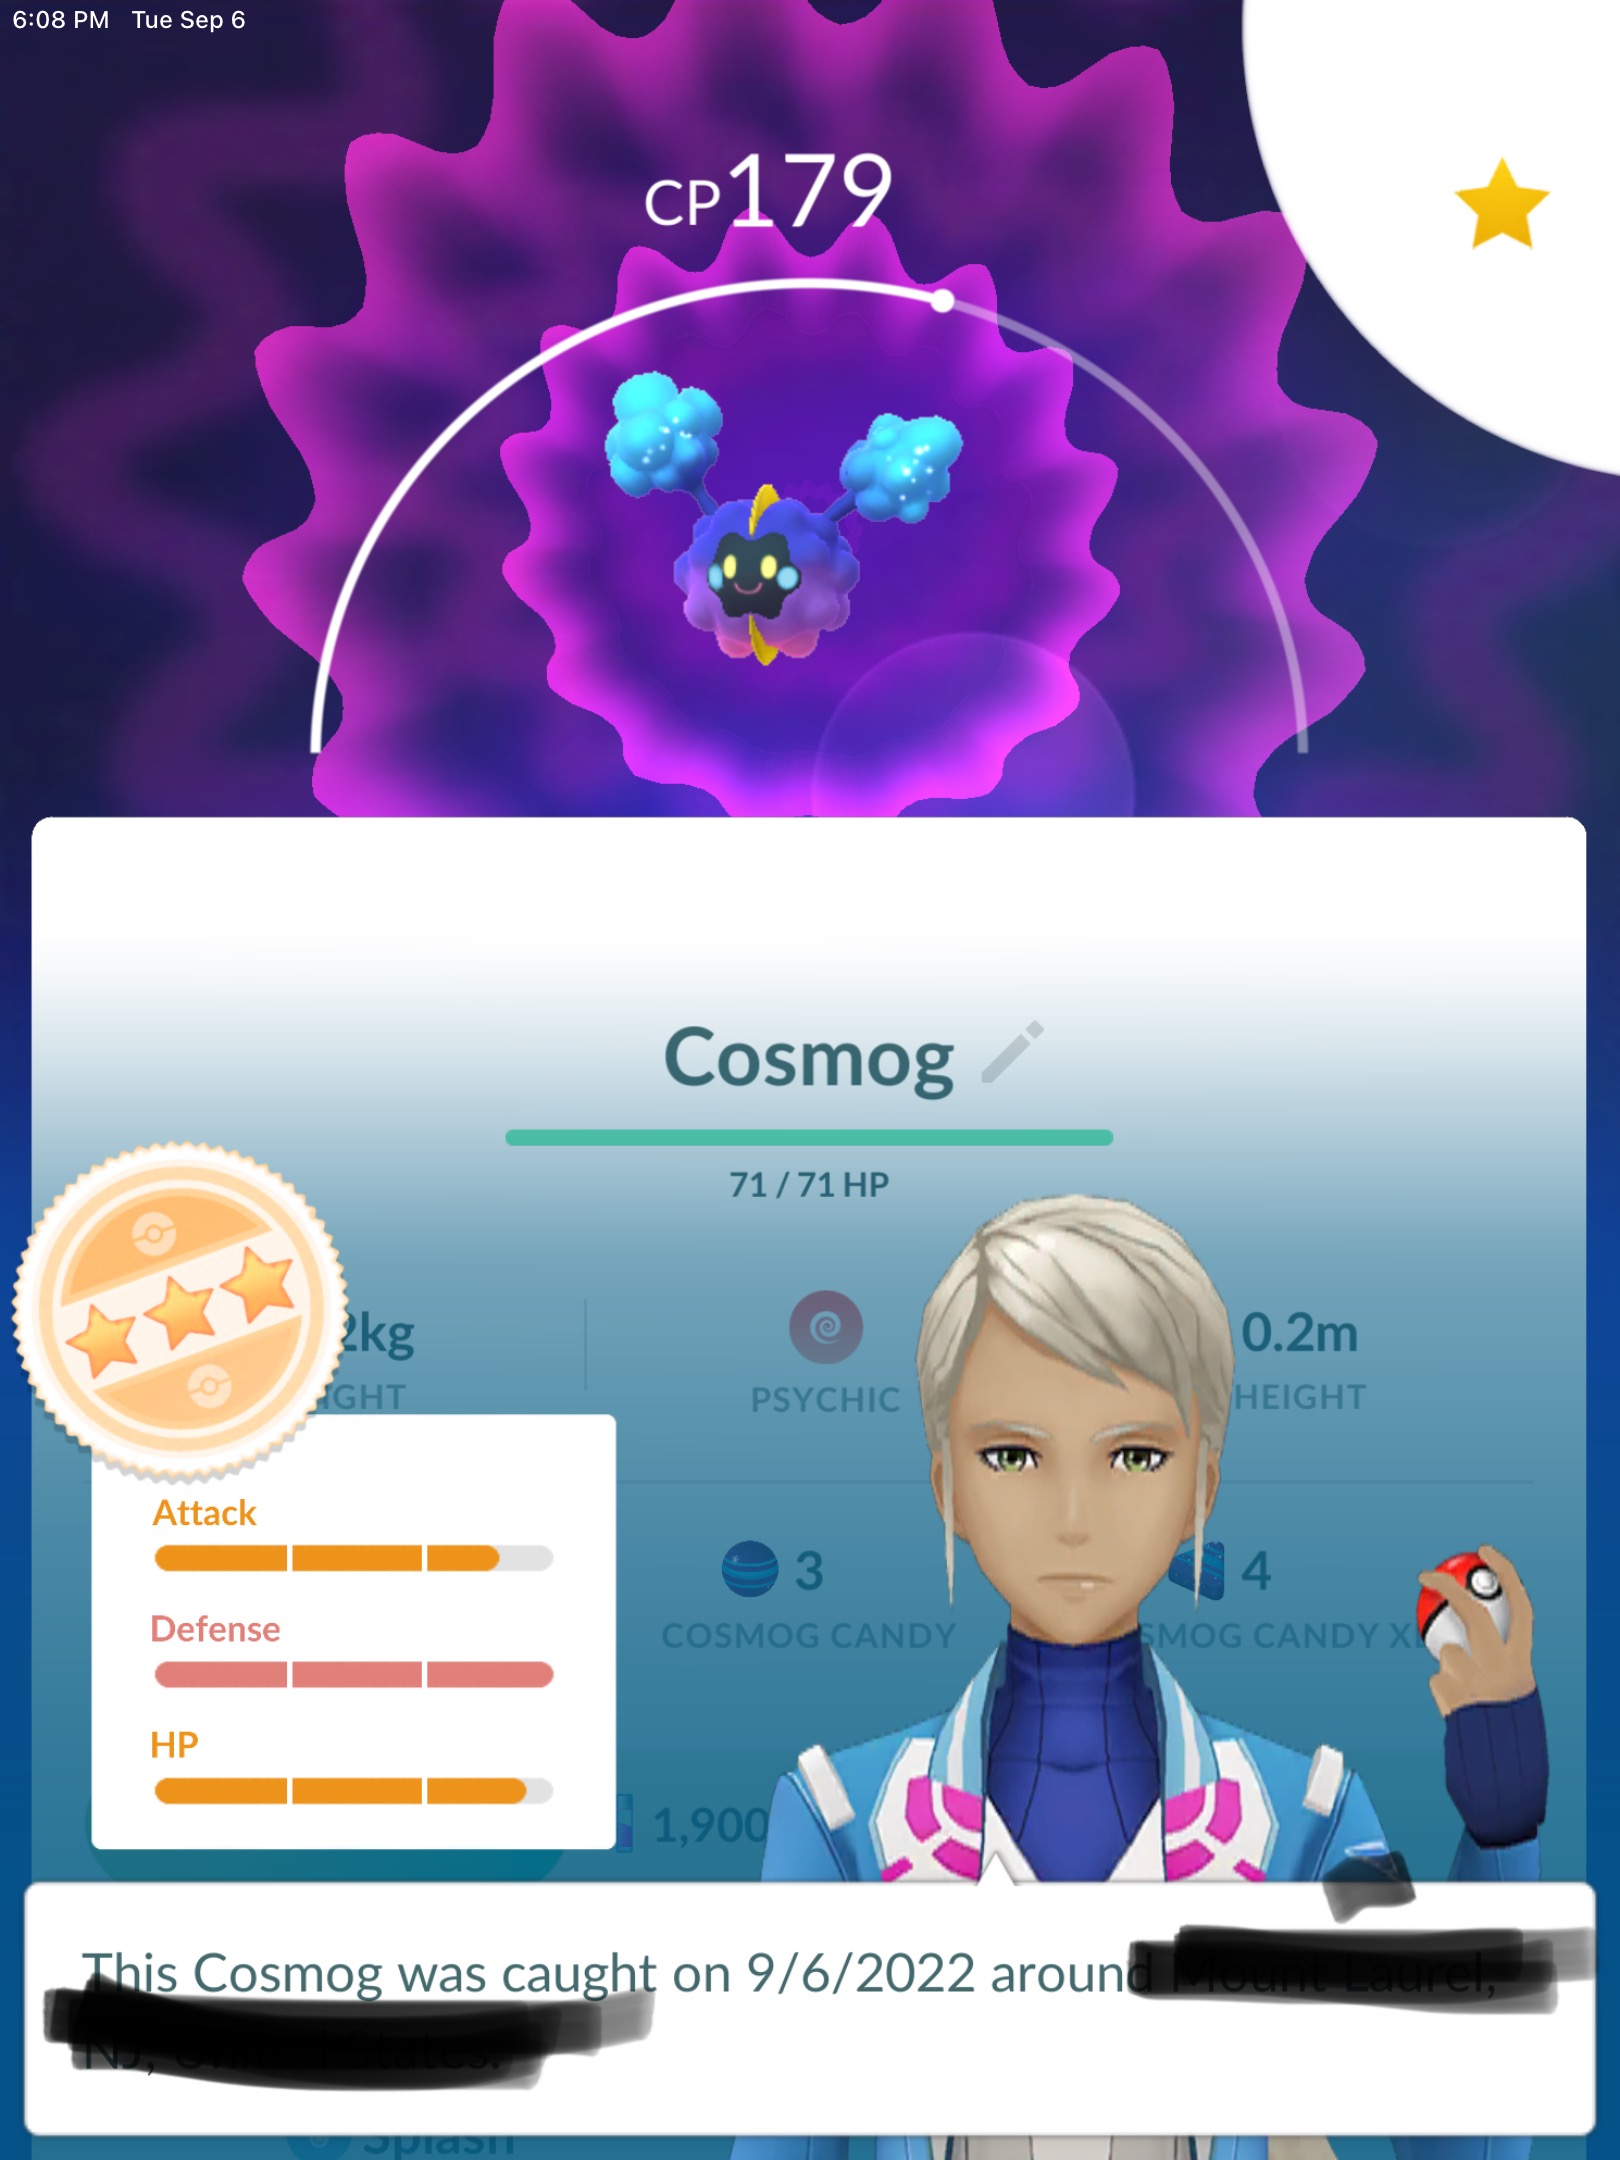 Cosmog (Pokémon) - Pokémon Go